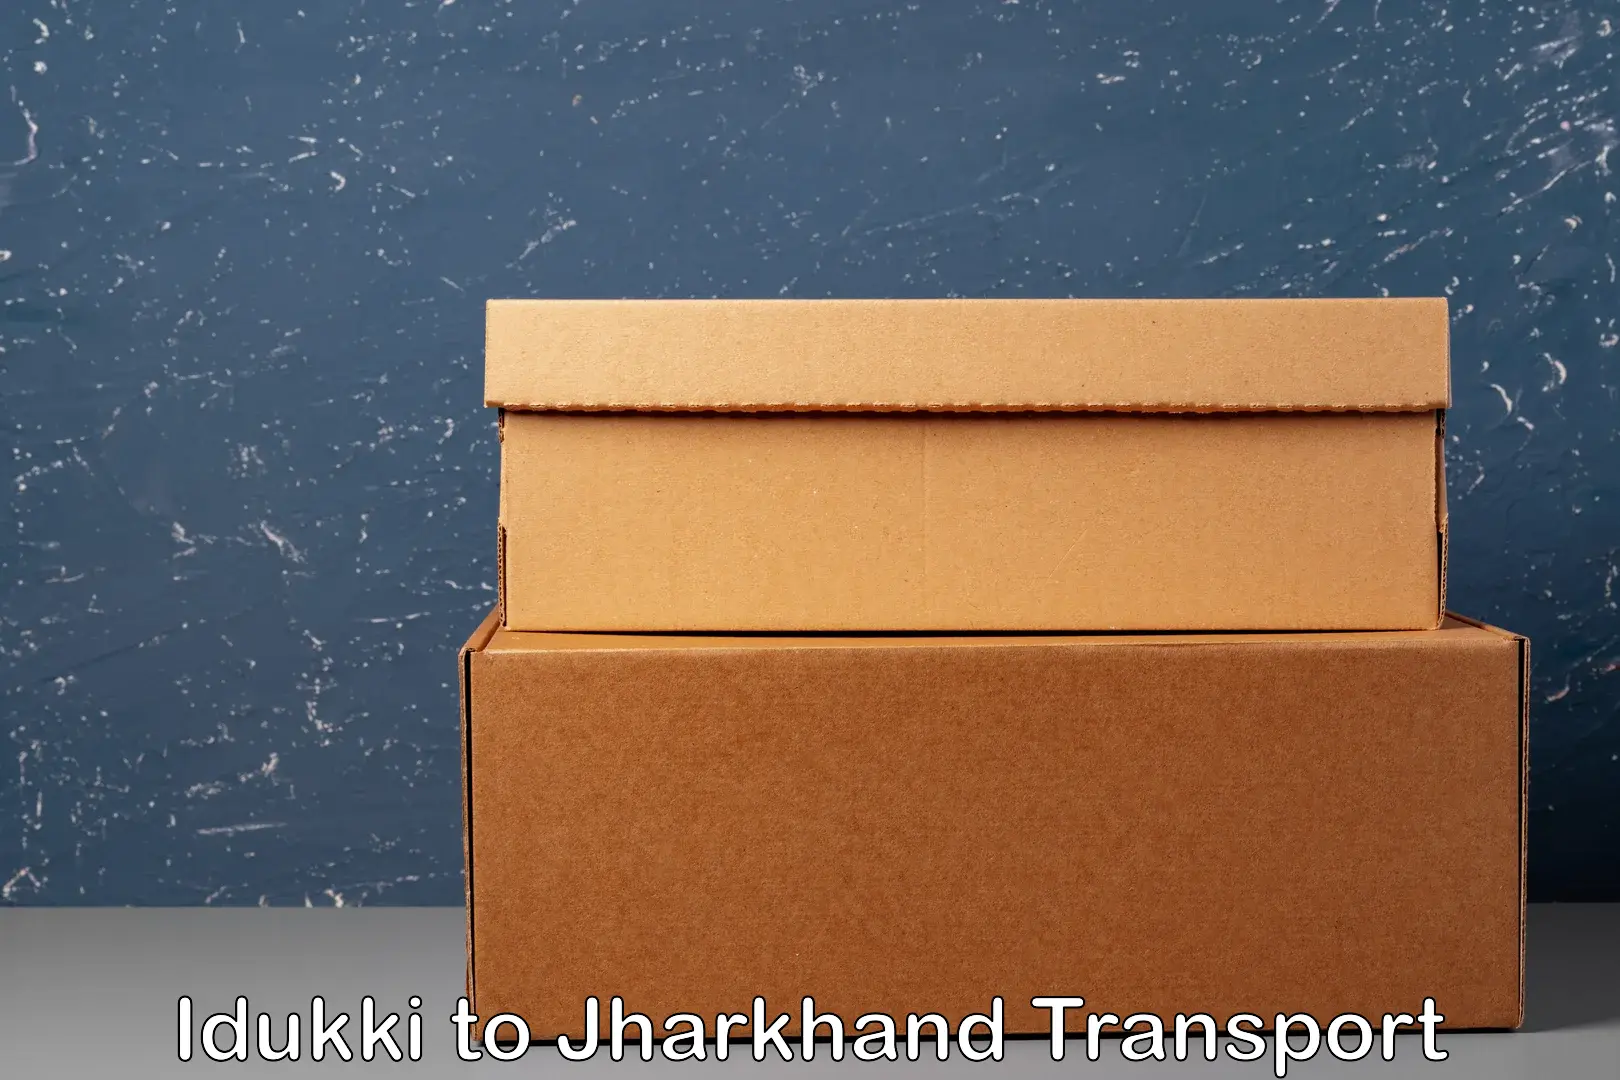 Container transport service Idukki to Nagar Untari